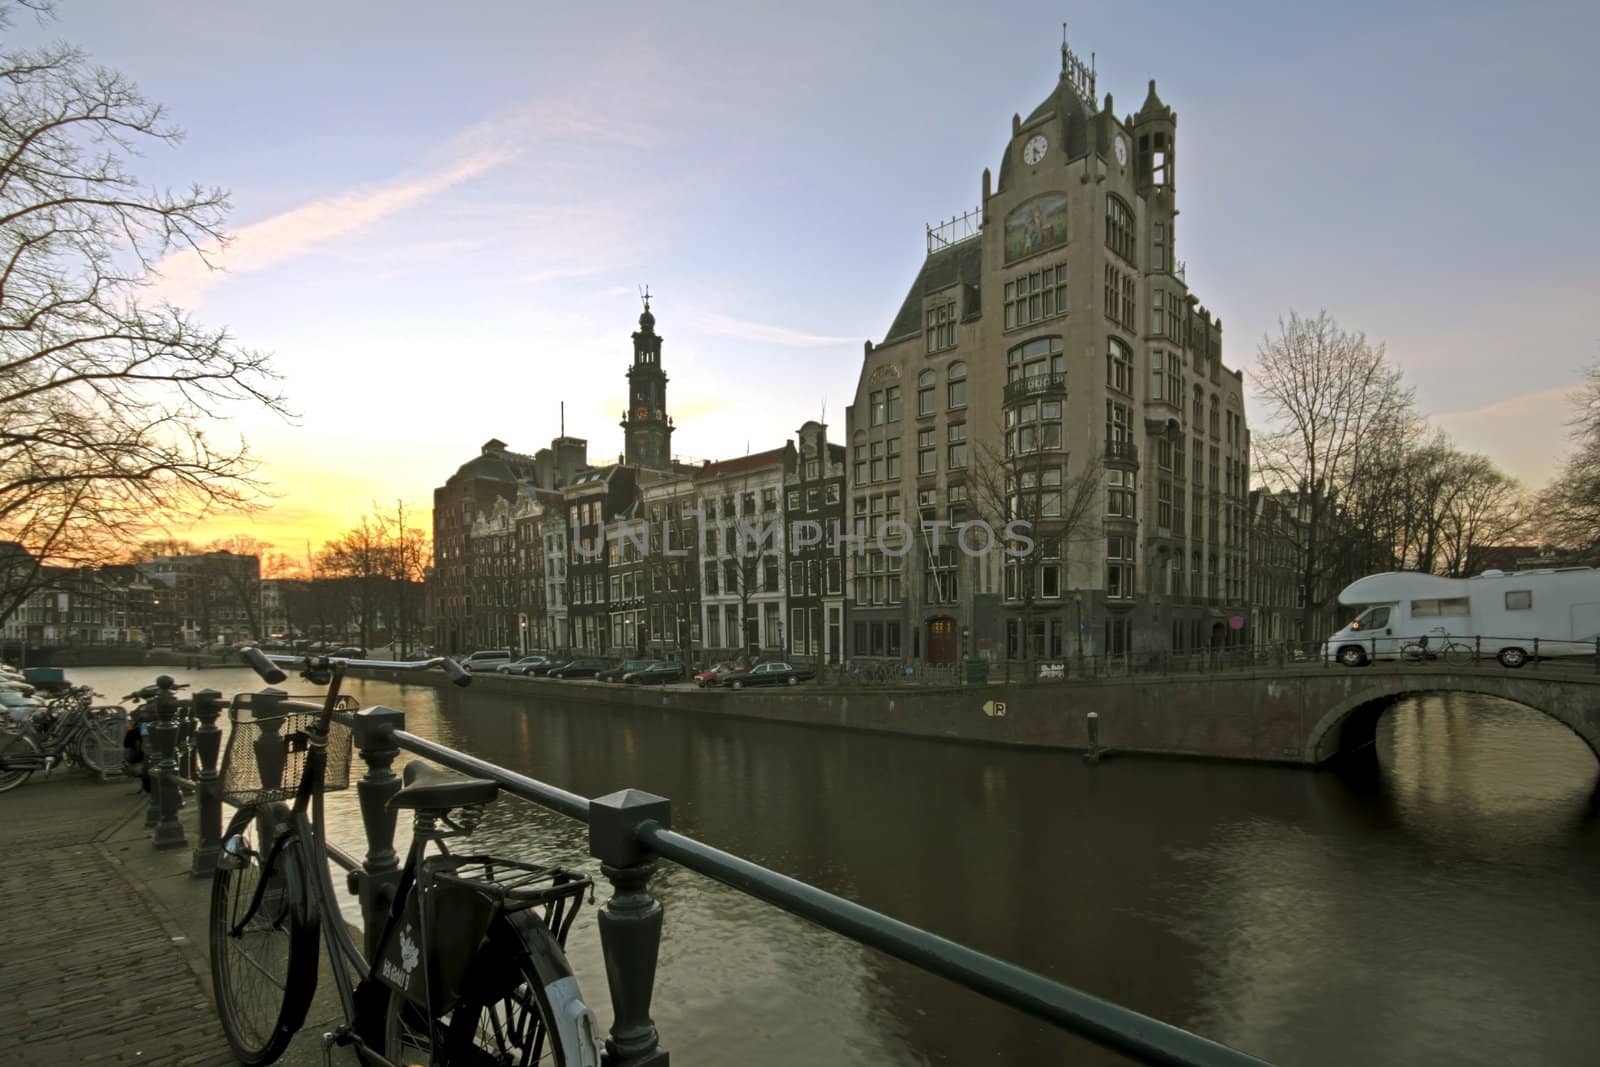 Amsterdam De Jordaan in the Netherlands

